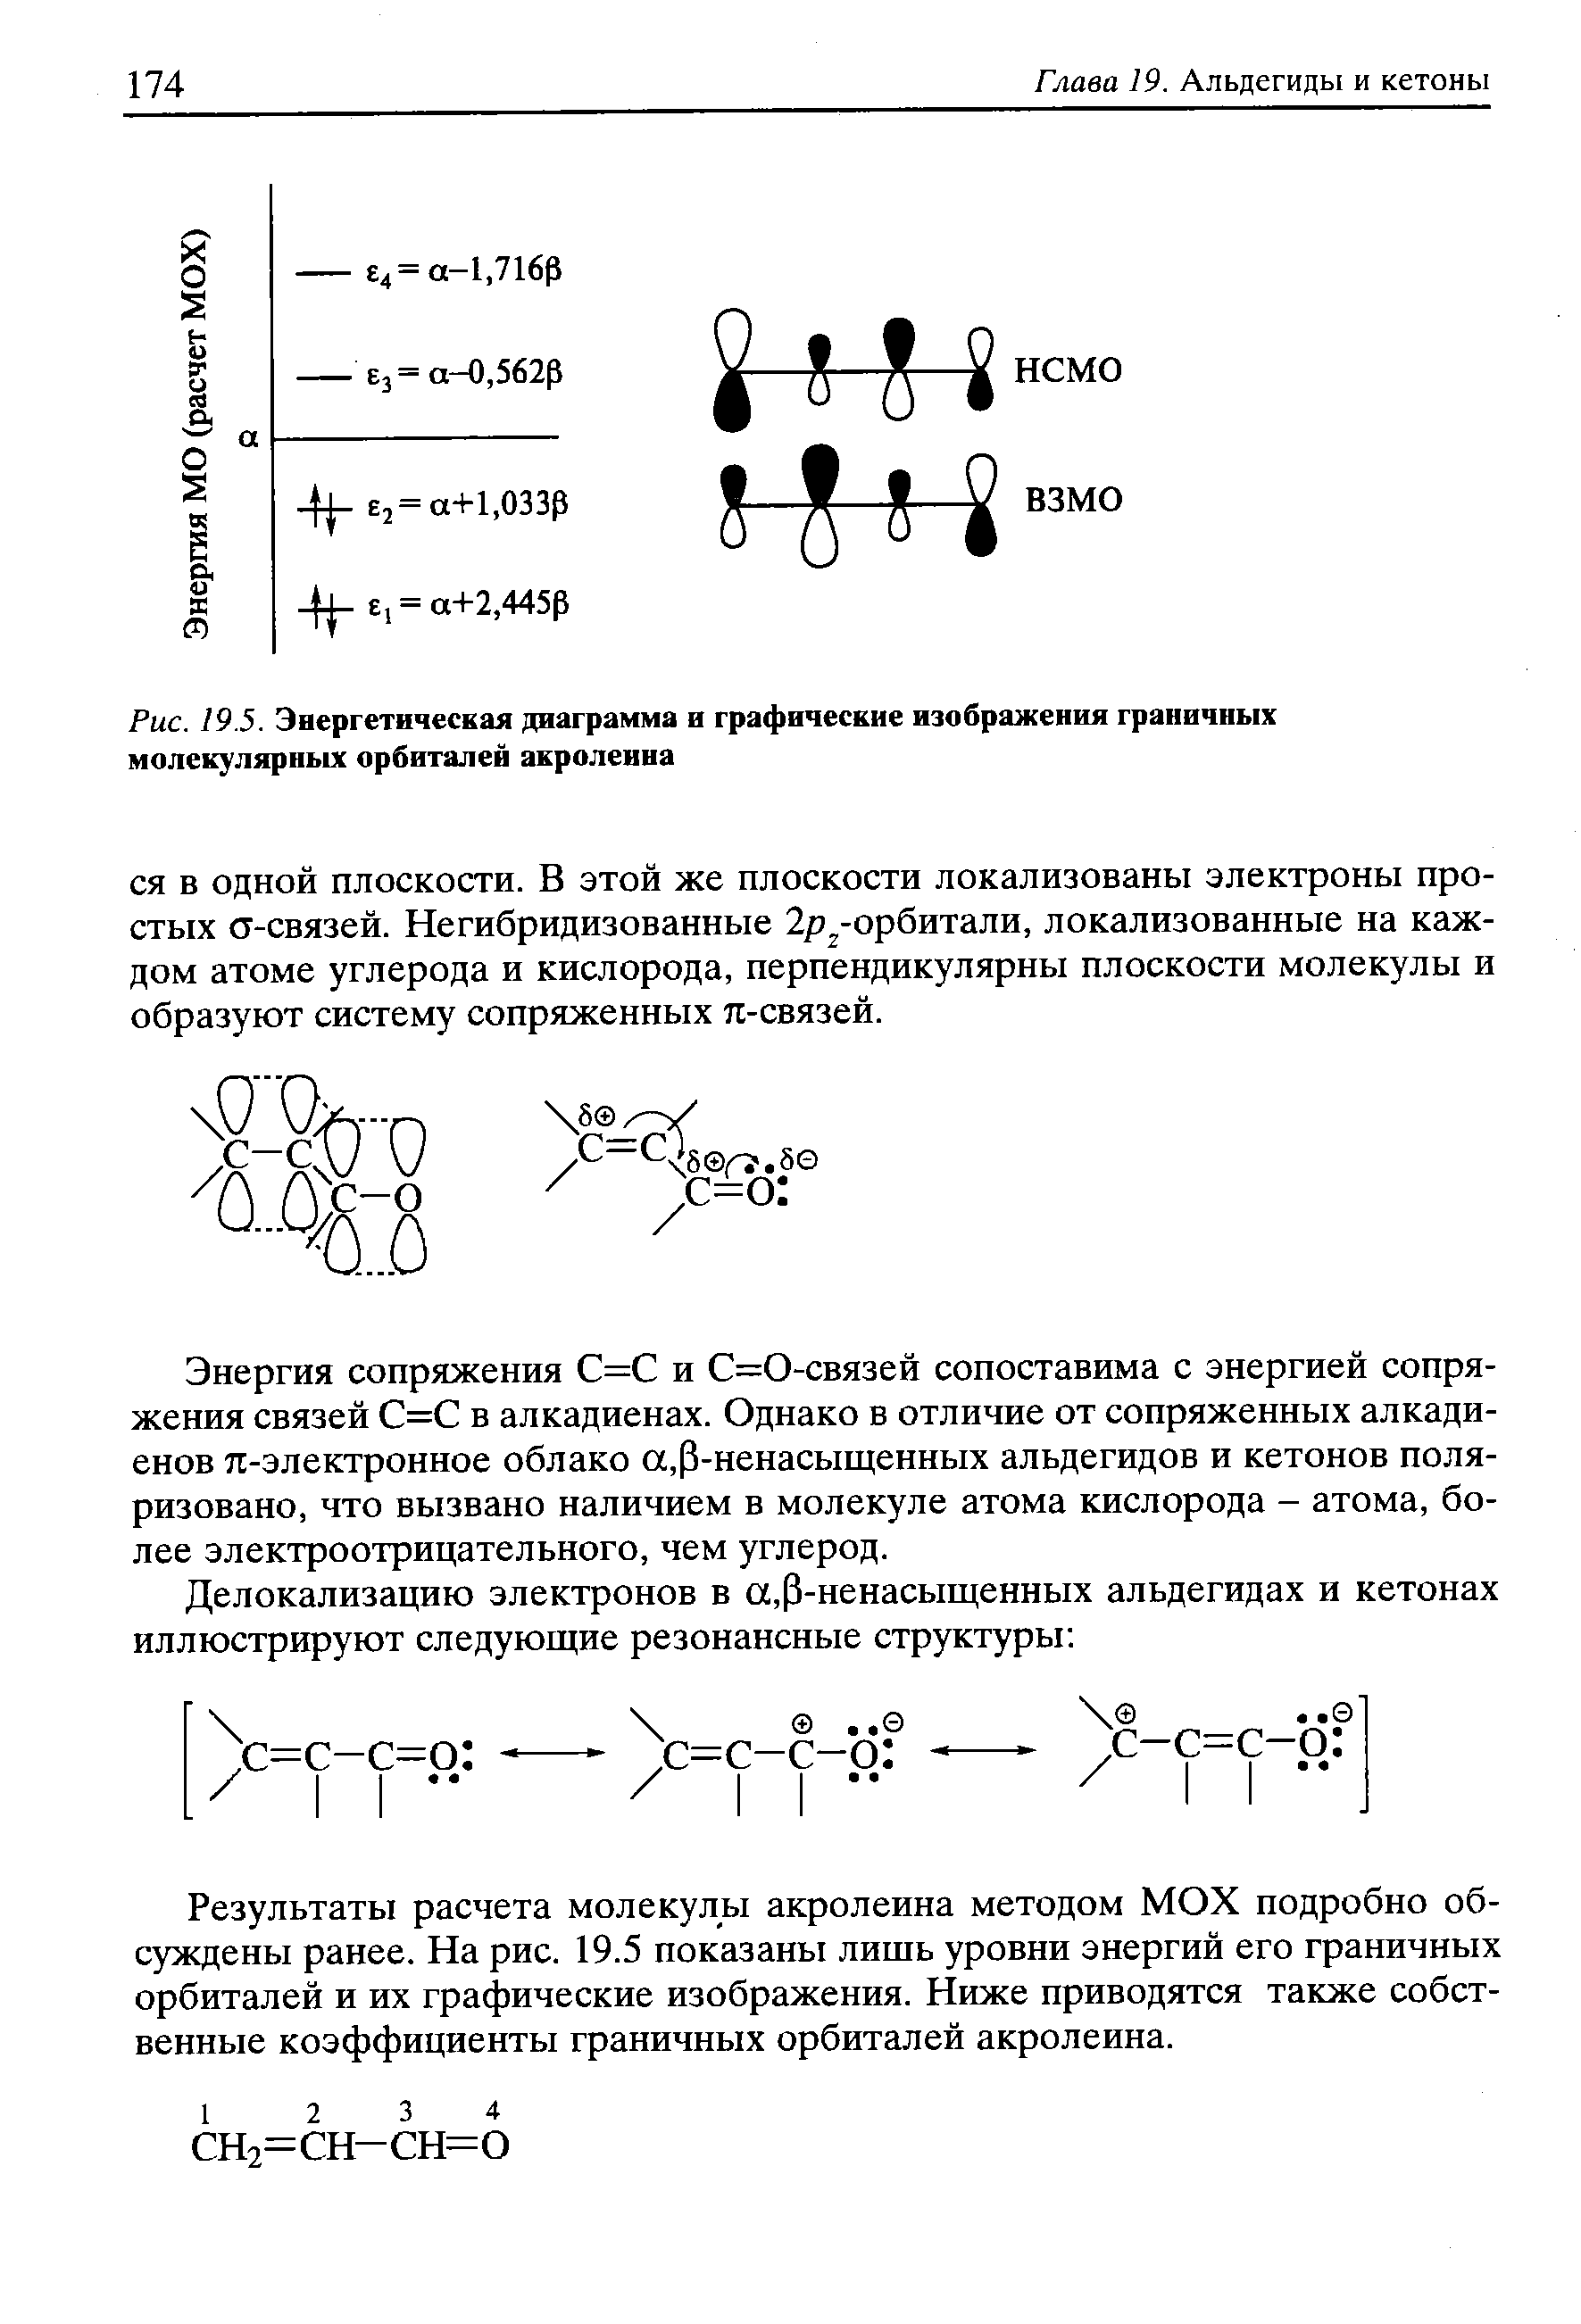 Энергия сопряжения С=С и С=0-связей сопоставима с энергией сопряжения связей С=С в алкадиенах. Однако в отличие от сопряженных алкади-енов л-электронное облако а,(3-ненасыщенных альдегидов и кетонов поляризовано, что вызвано наличием в молекуле атома кислорода - атома, более электроотрицательного, чем углерод.